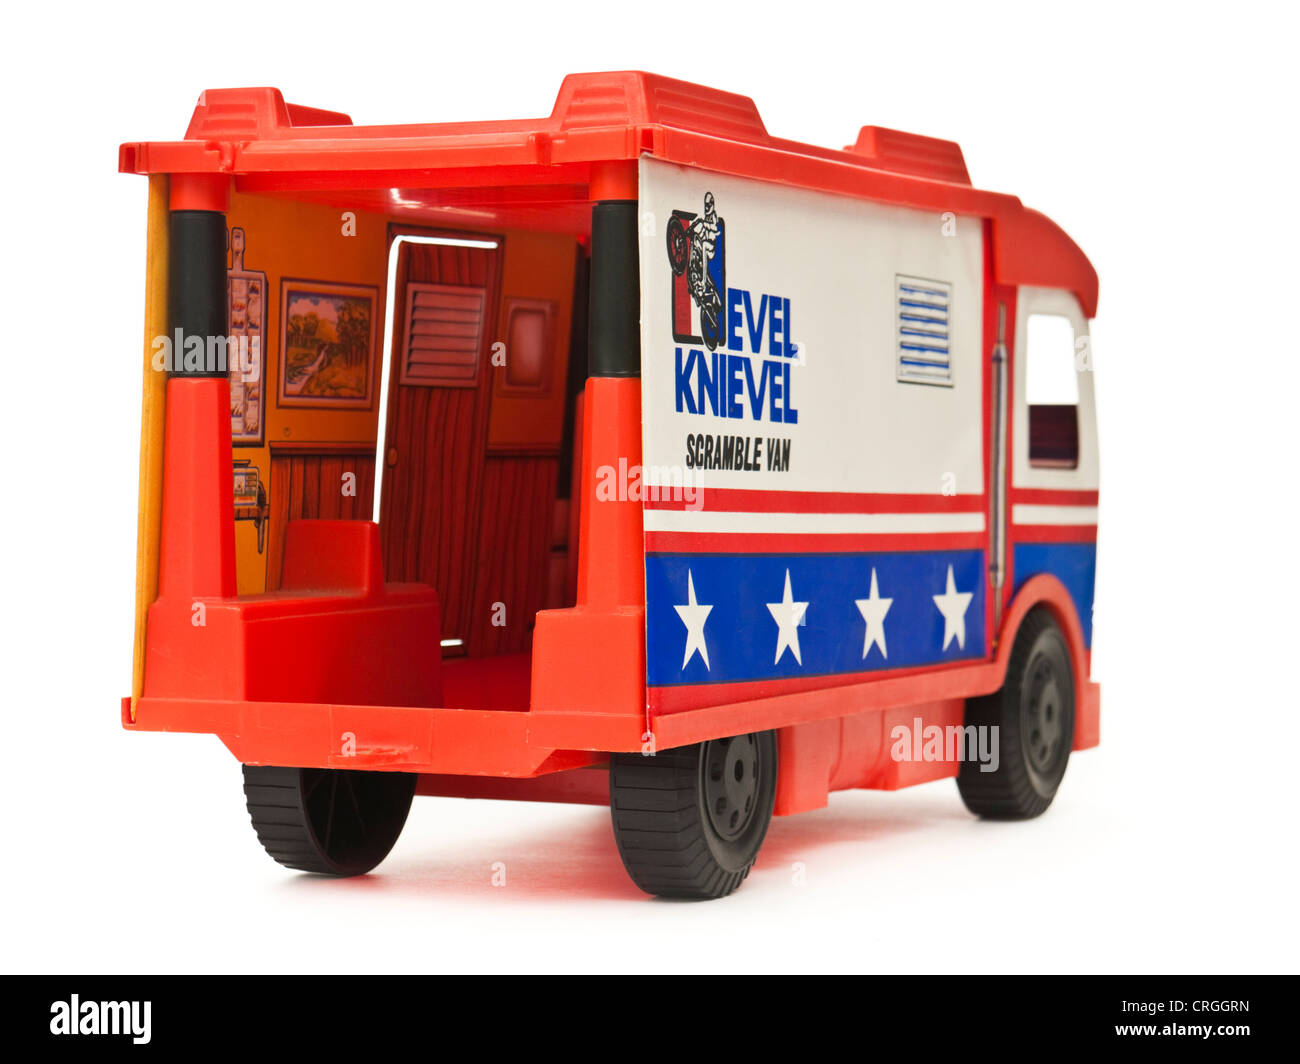 1973 Evel Knievel 'Scramble Van' giocattolo dall ideale Foto Stock